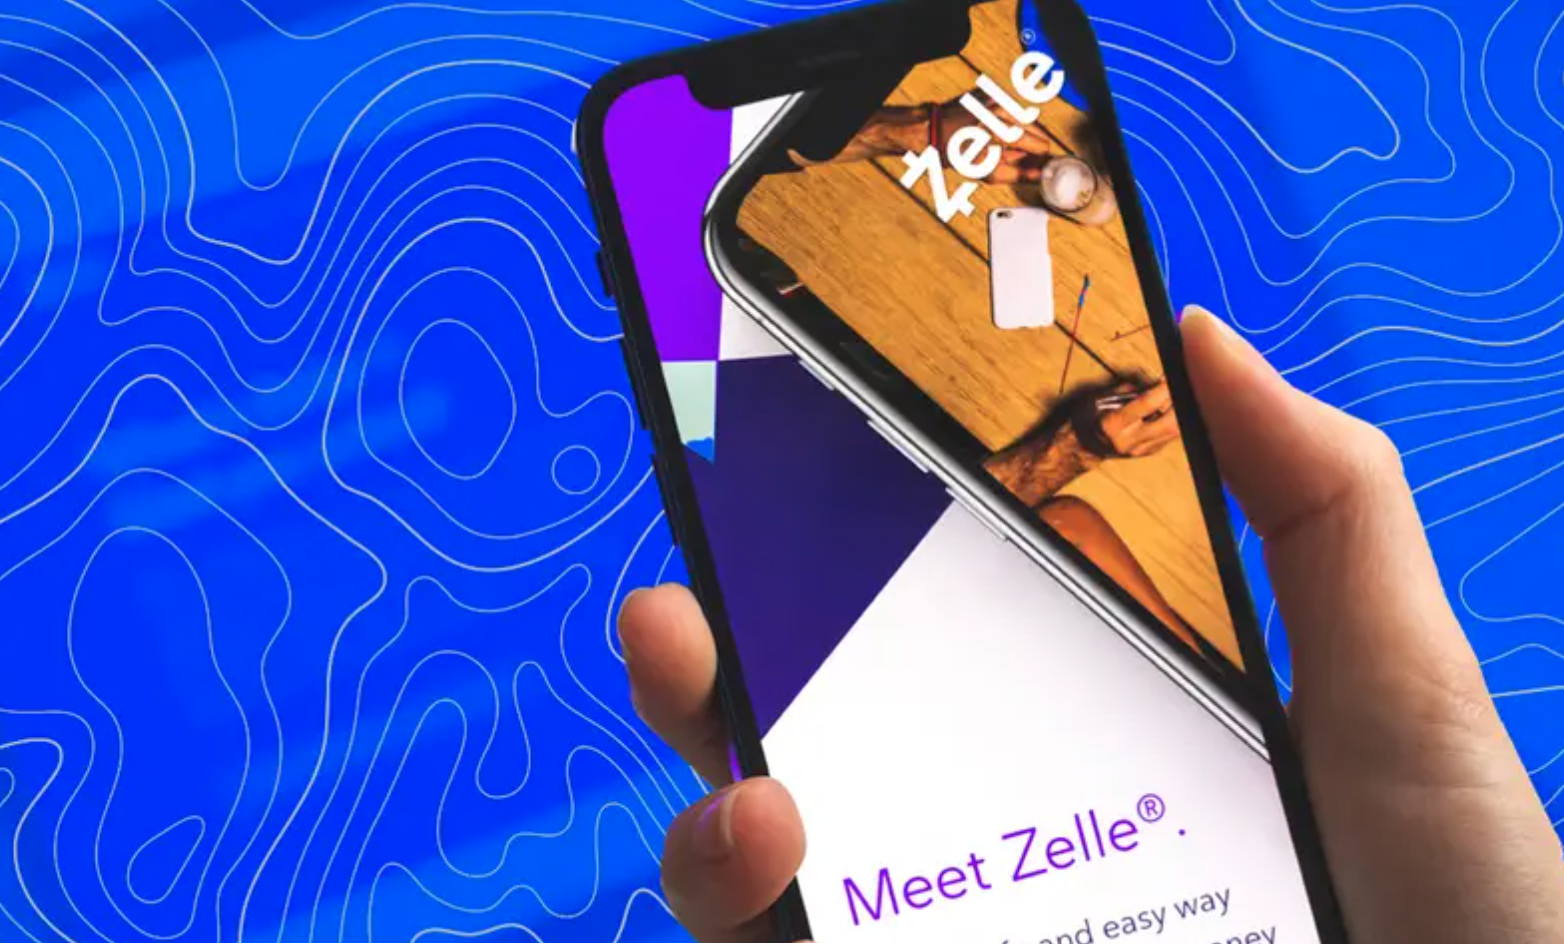 Các ứng dụng thanh toán ngang hàng (P2P) như Zelle và Venmo của Paypal cho phép người dùng lưu trữ thông tin ngân hàng trên điện thoại thông minh đã trở nên phổ biến